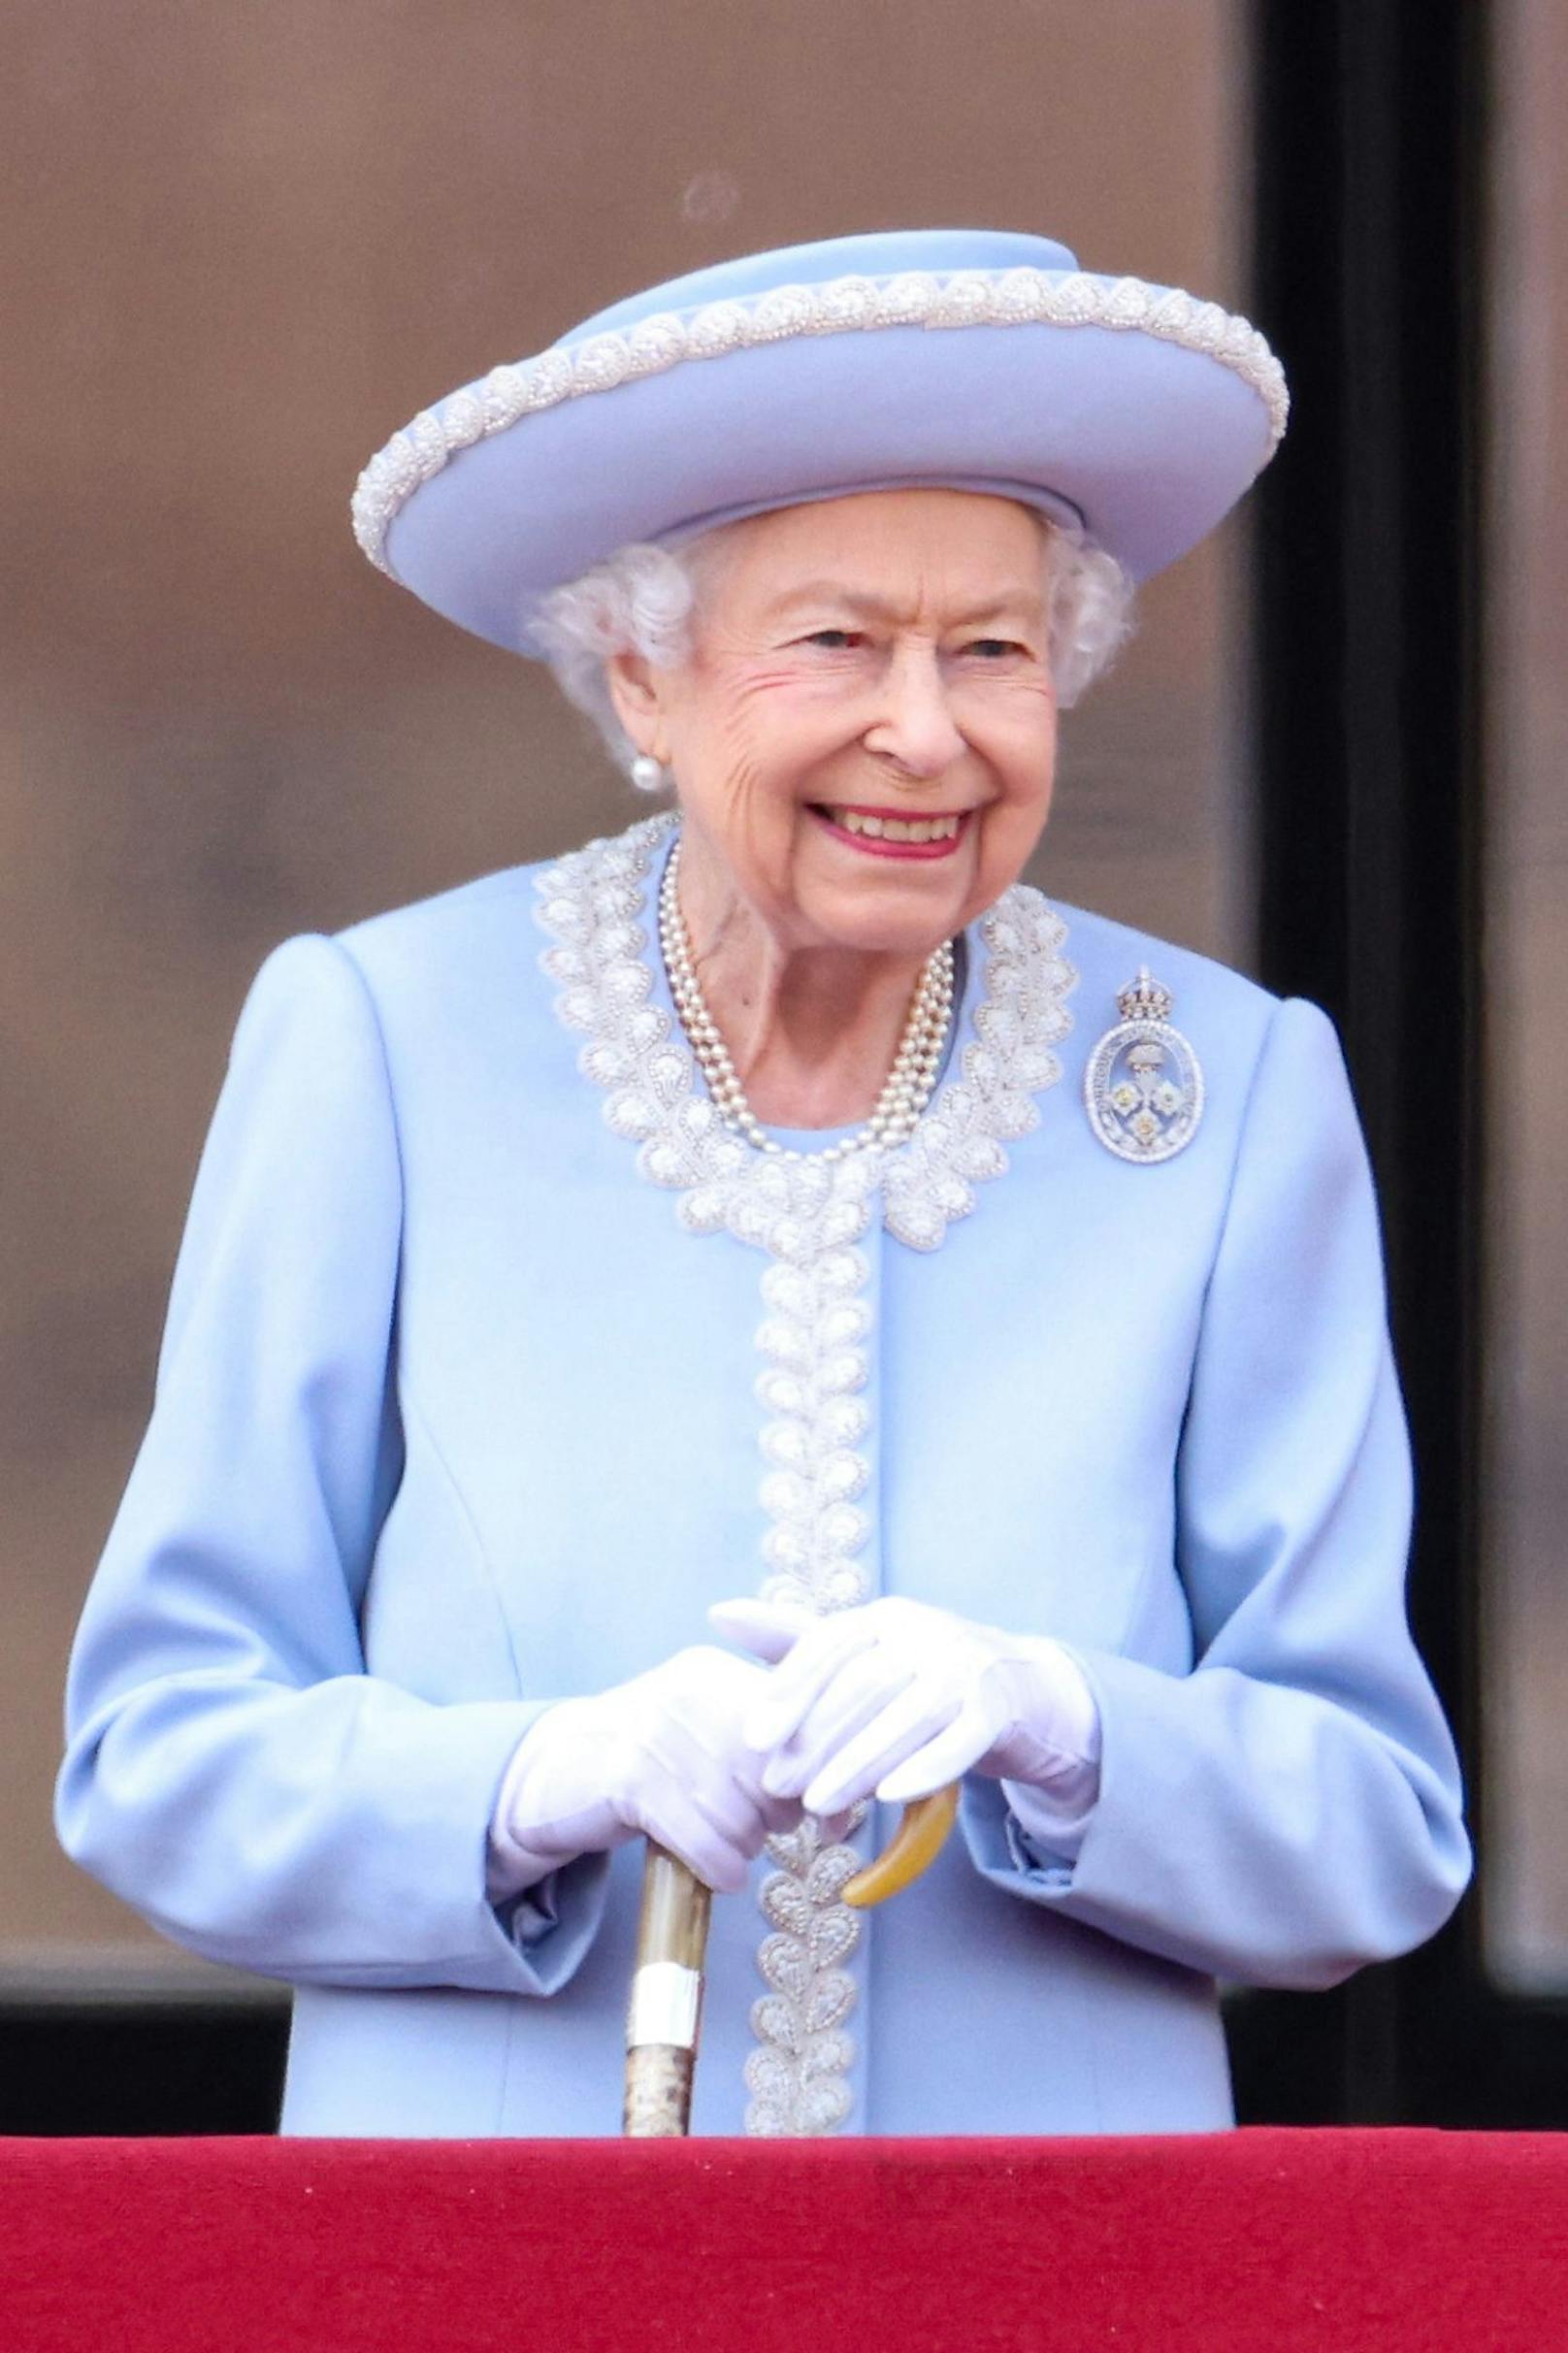 Ein Unbekannter sagte ihr bei einem Spaziergang in Schottland, sie sehe "genauso aus wie die Queen". Elizabeth II. antwortete: "Wie beruhigend"